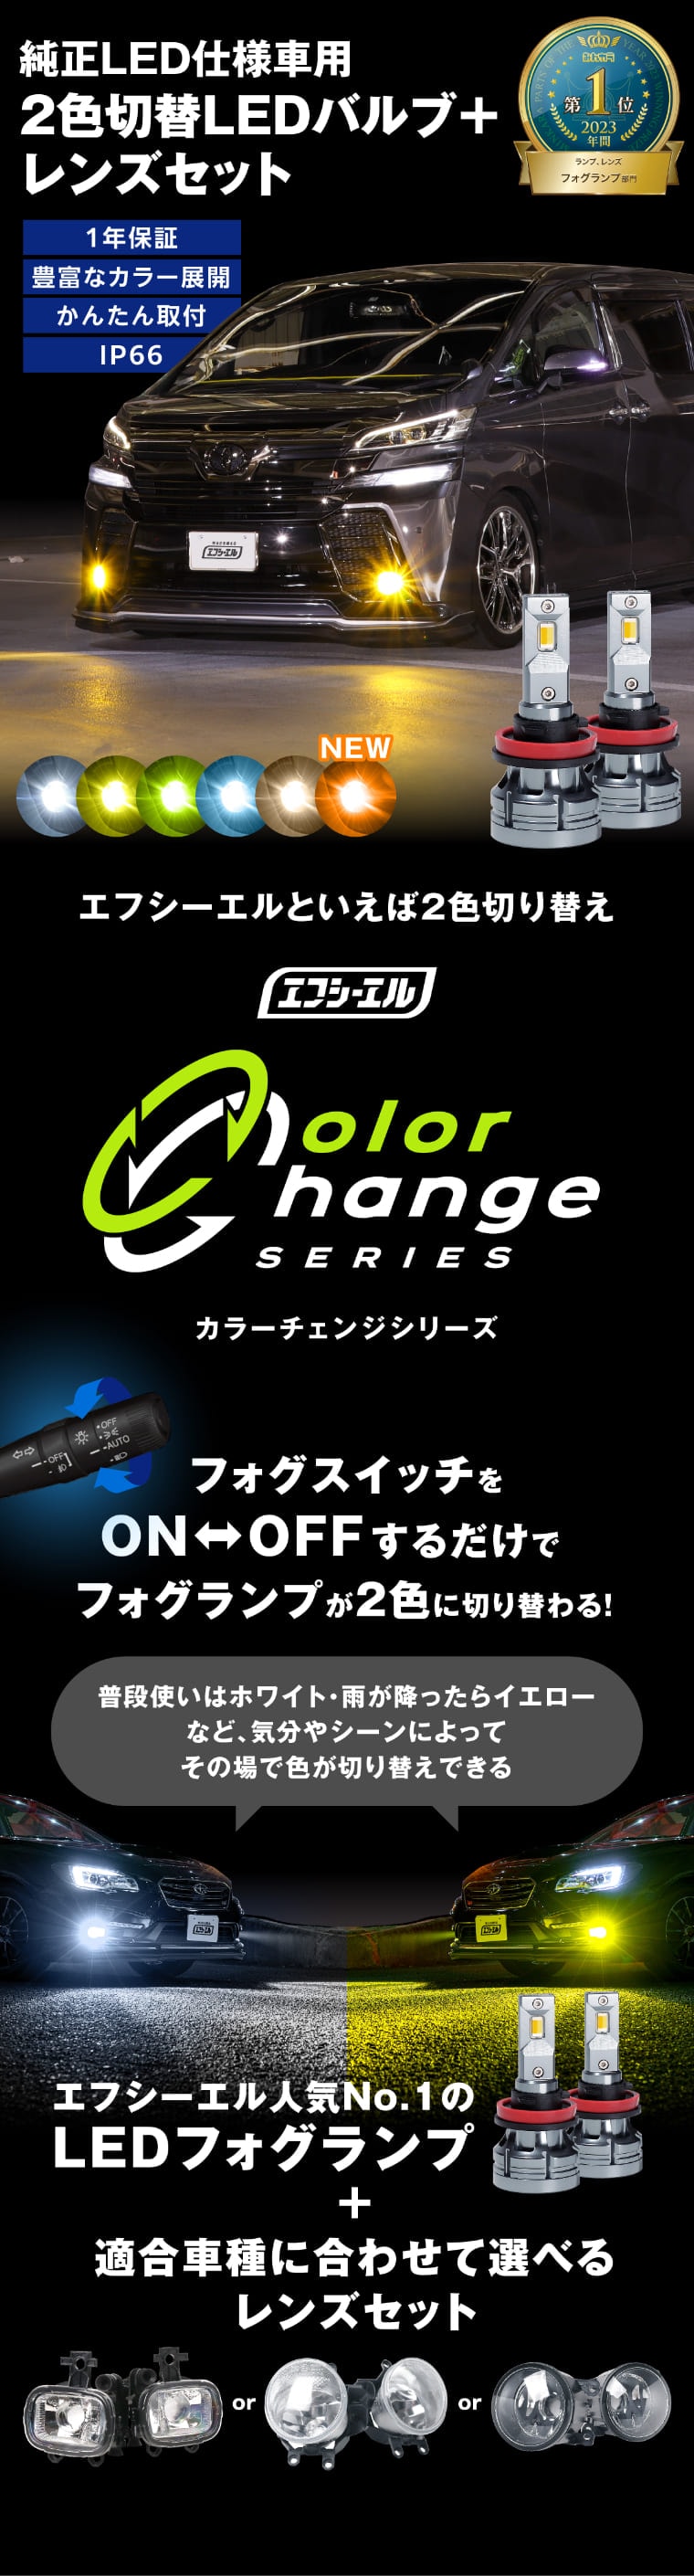 【売り廉価】トヨタ led フォグランプユニット 2色切り替え式 ブルー R1 パーツ